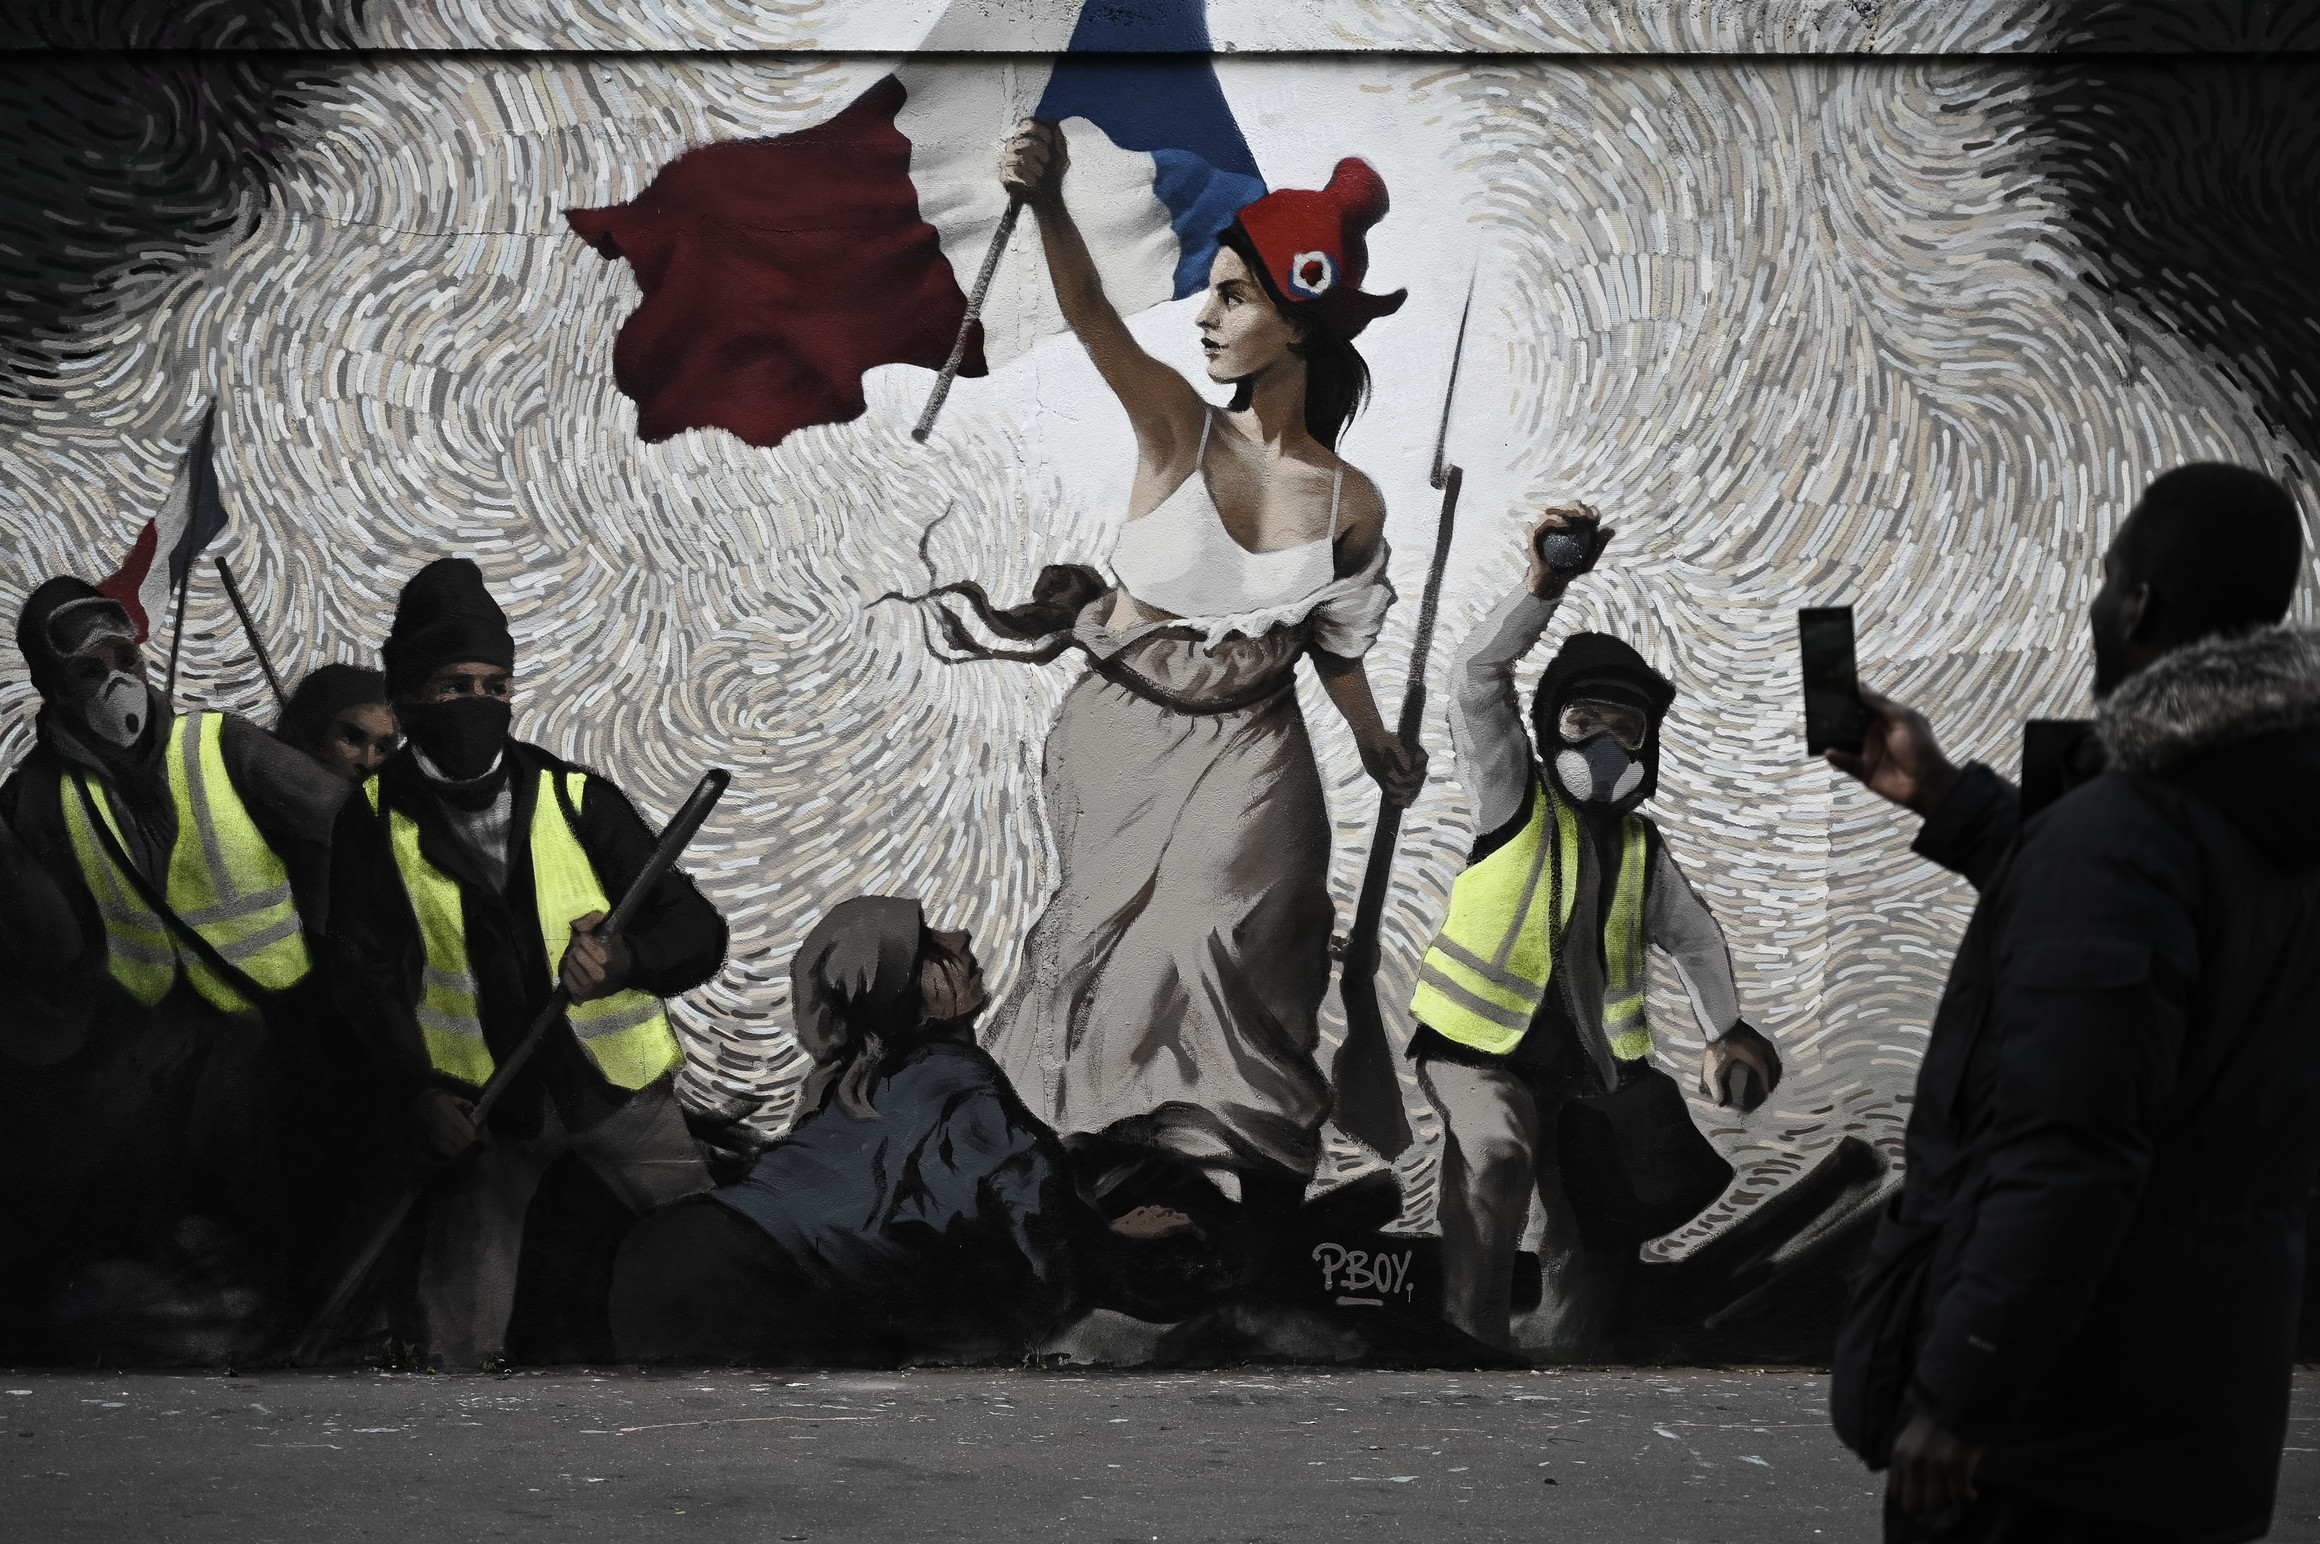 Parigi, i gilet gialli diventano arte: dipinti in un murale de “La libertà” di Delacroix